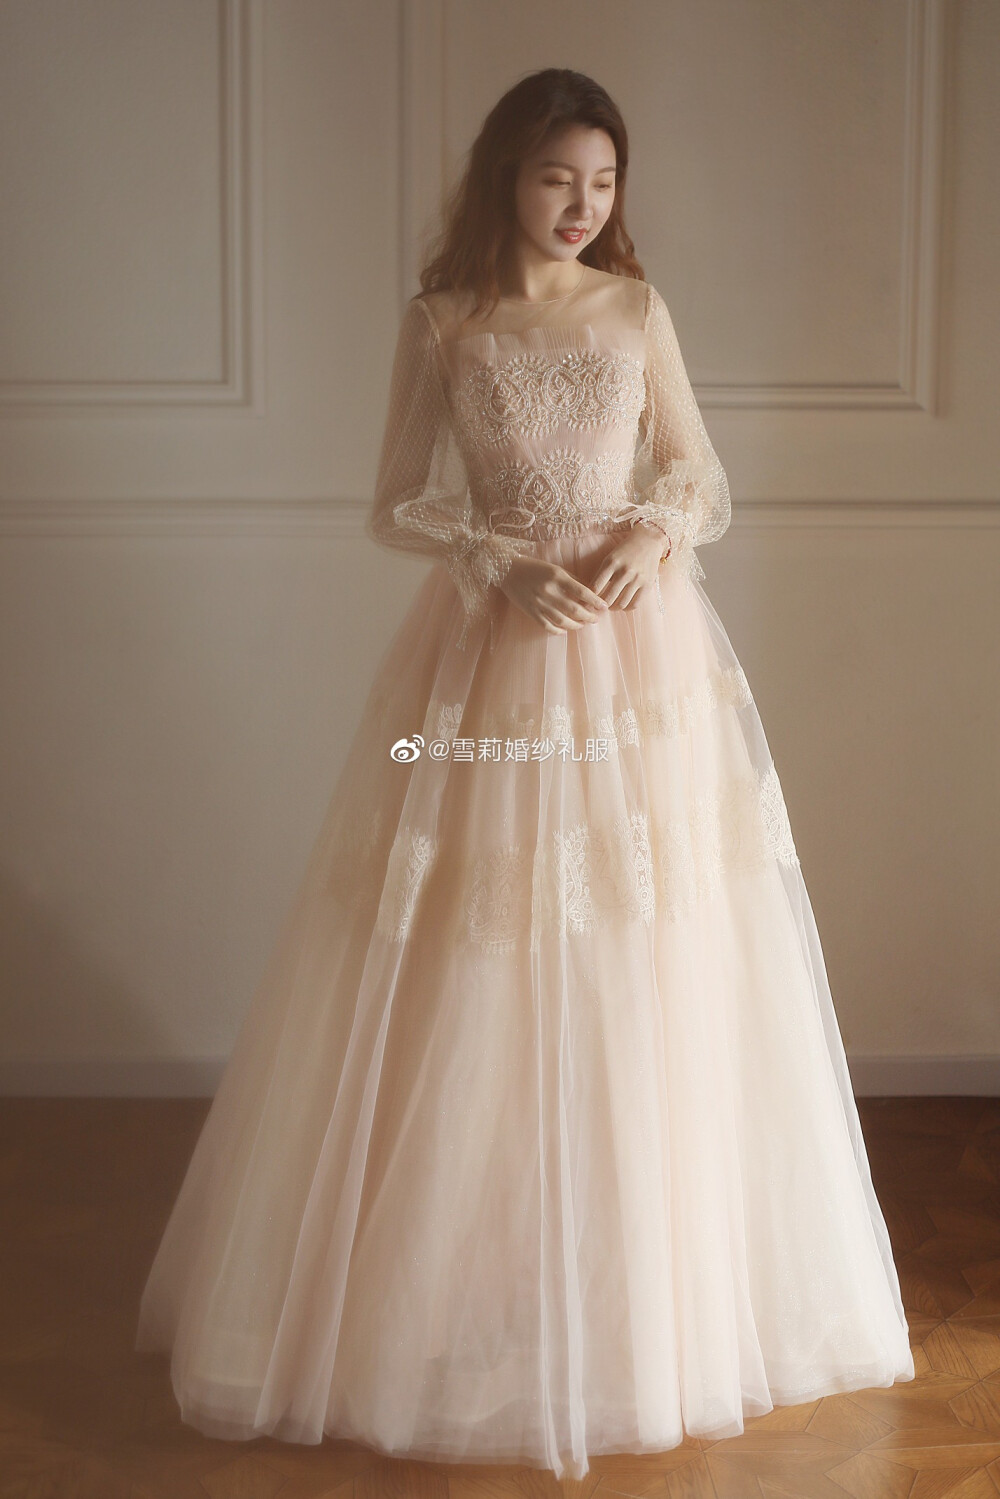 礼服 图源微博cr @ 雪莉婚纱礼服 - 堆糖,美图壁纸